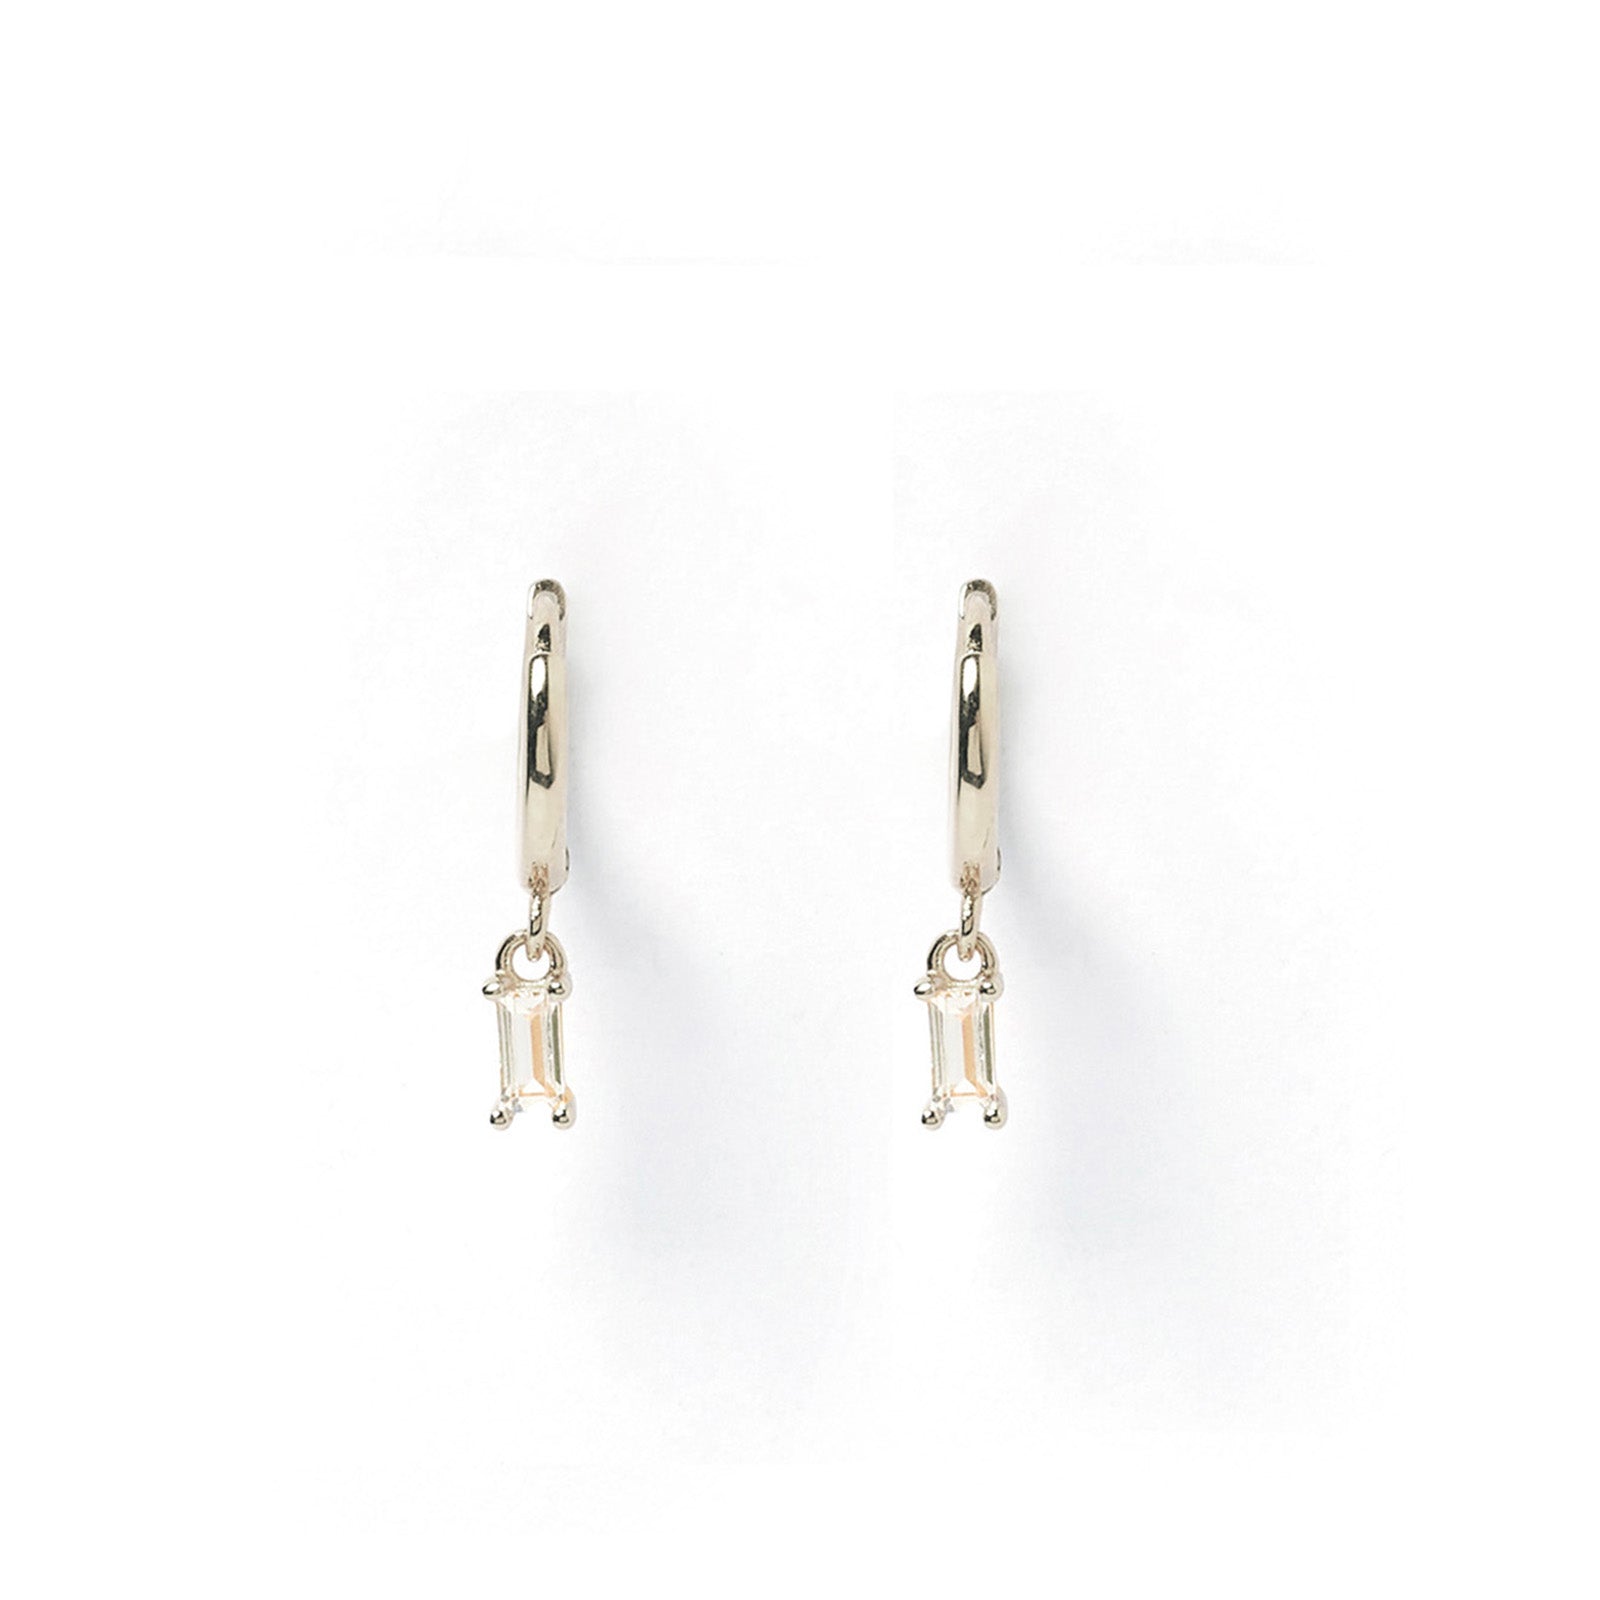 Pip Silver Charm Earrings